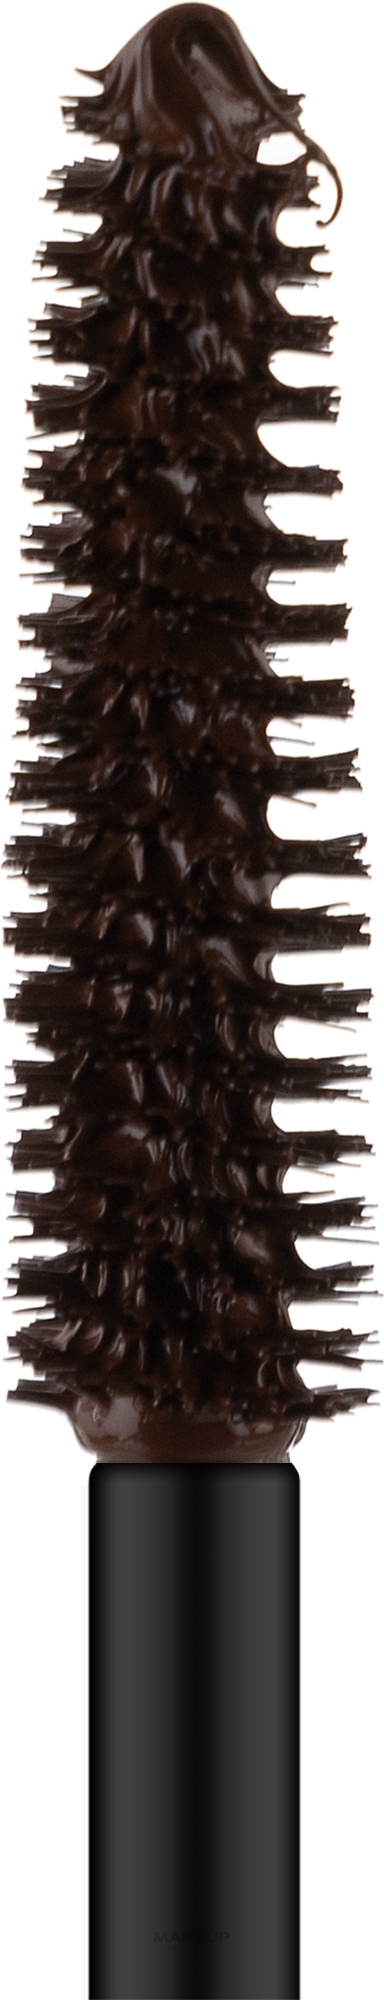 Тушь для ресниц "Объем и длина" - Otome Mascara Volume & Length — фото 302 - Шоколадный